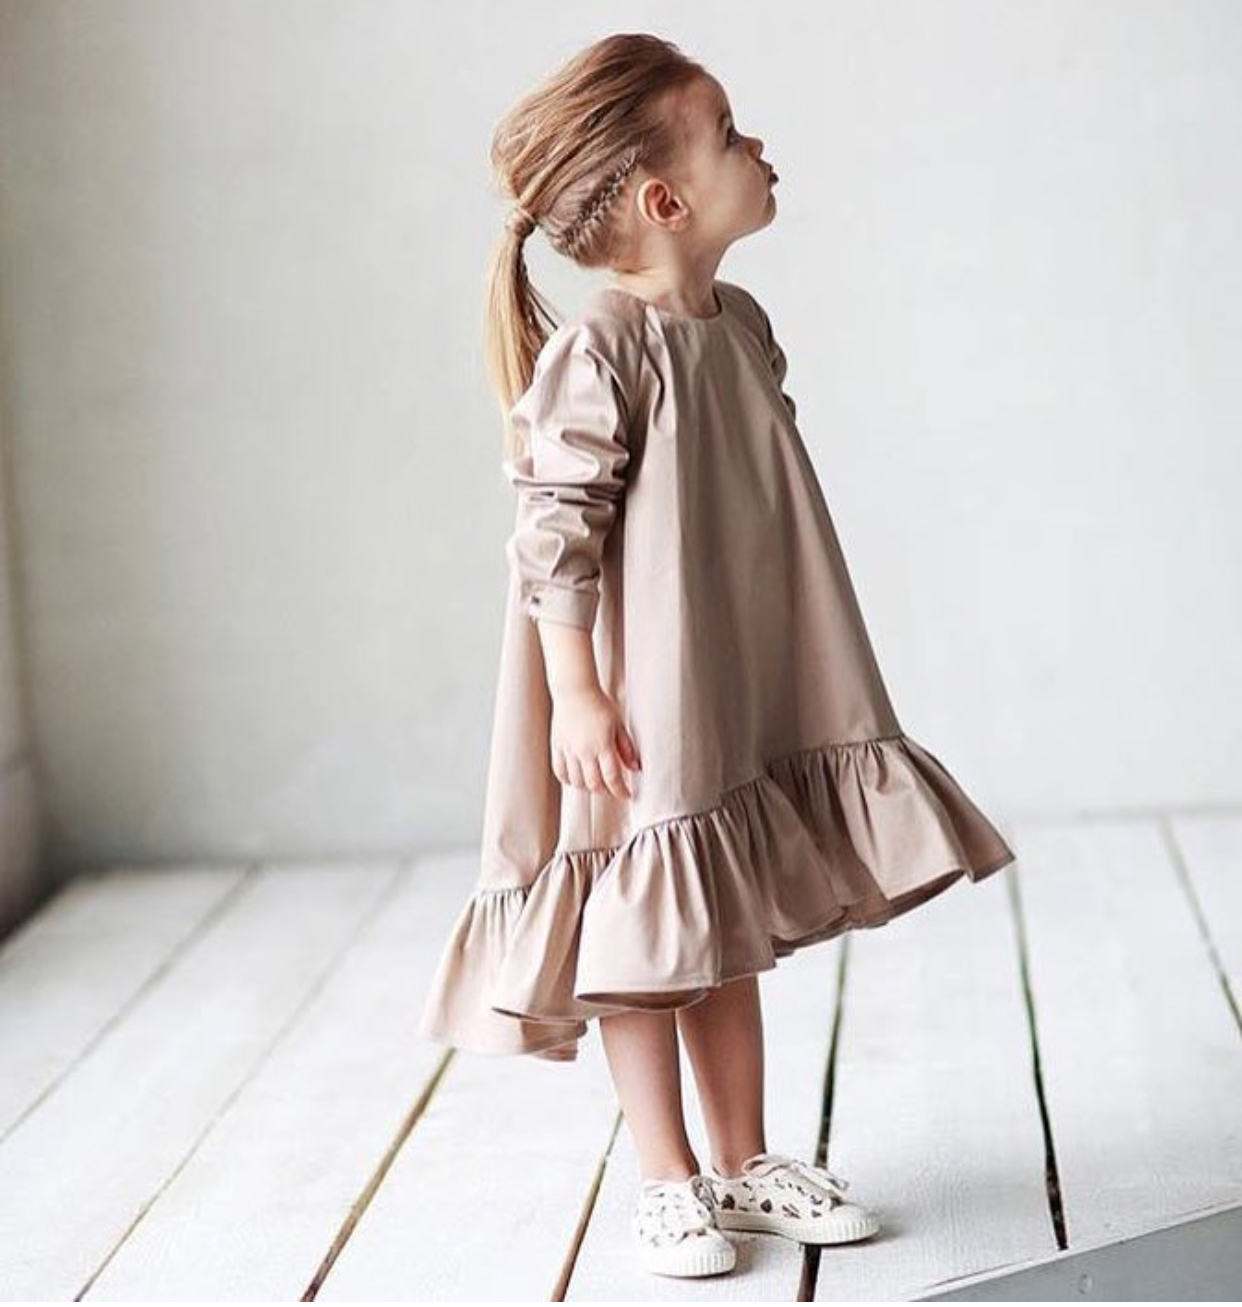 Красивые платья на маленьких девочках